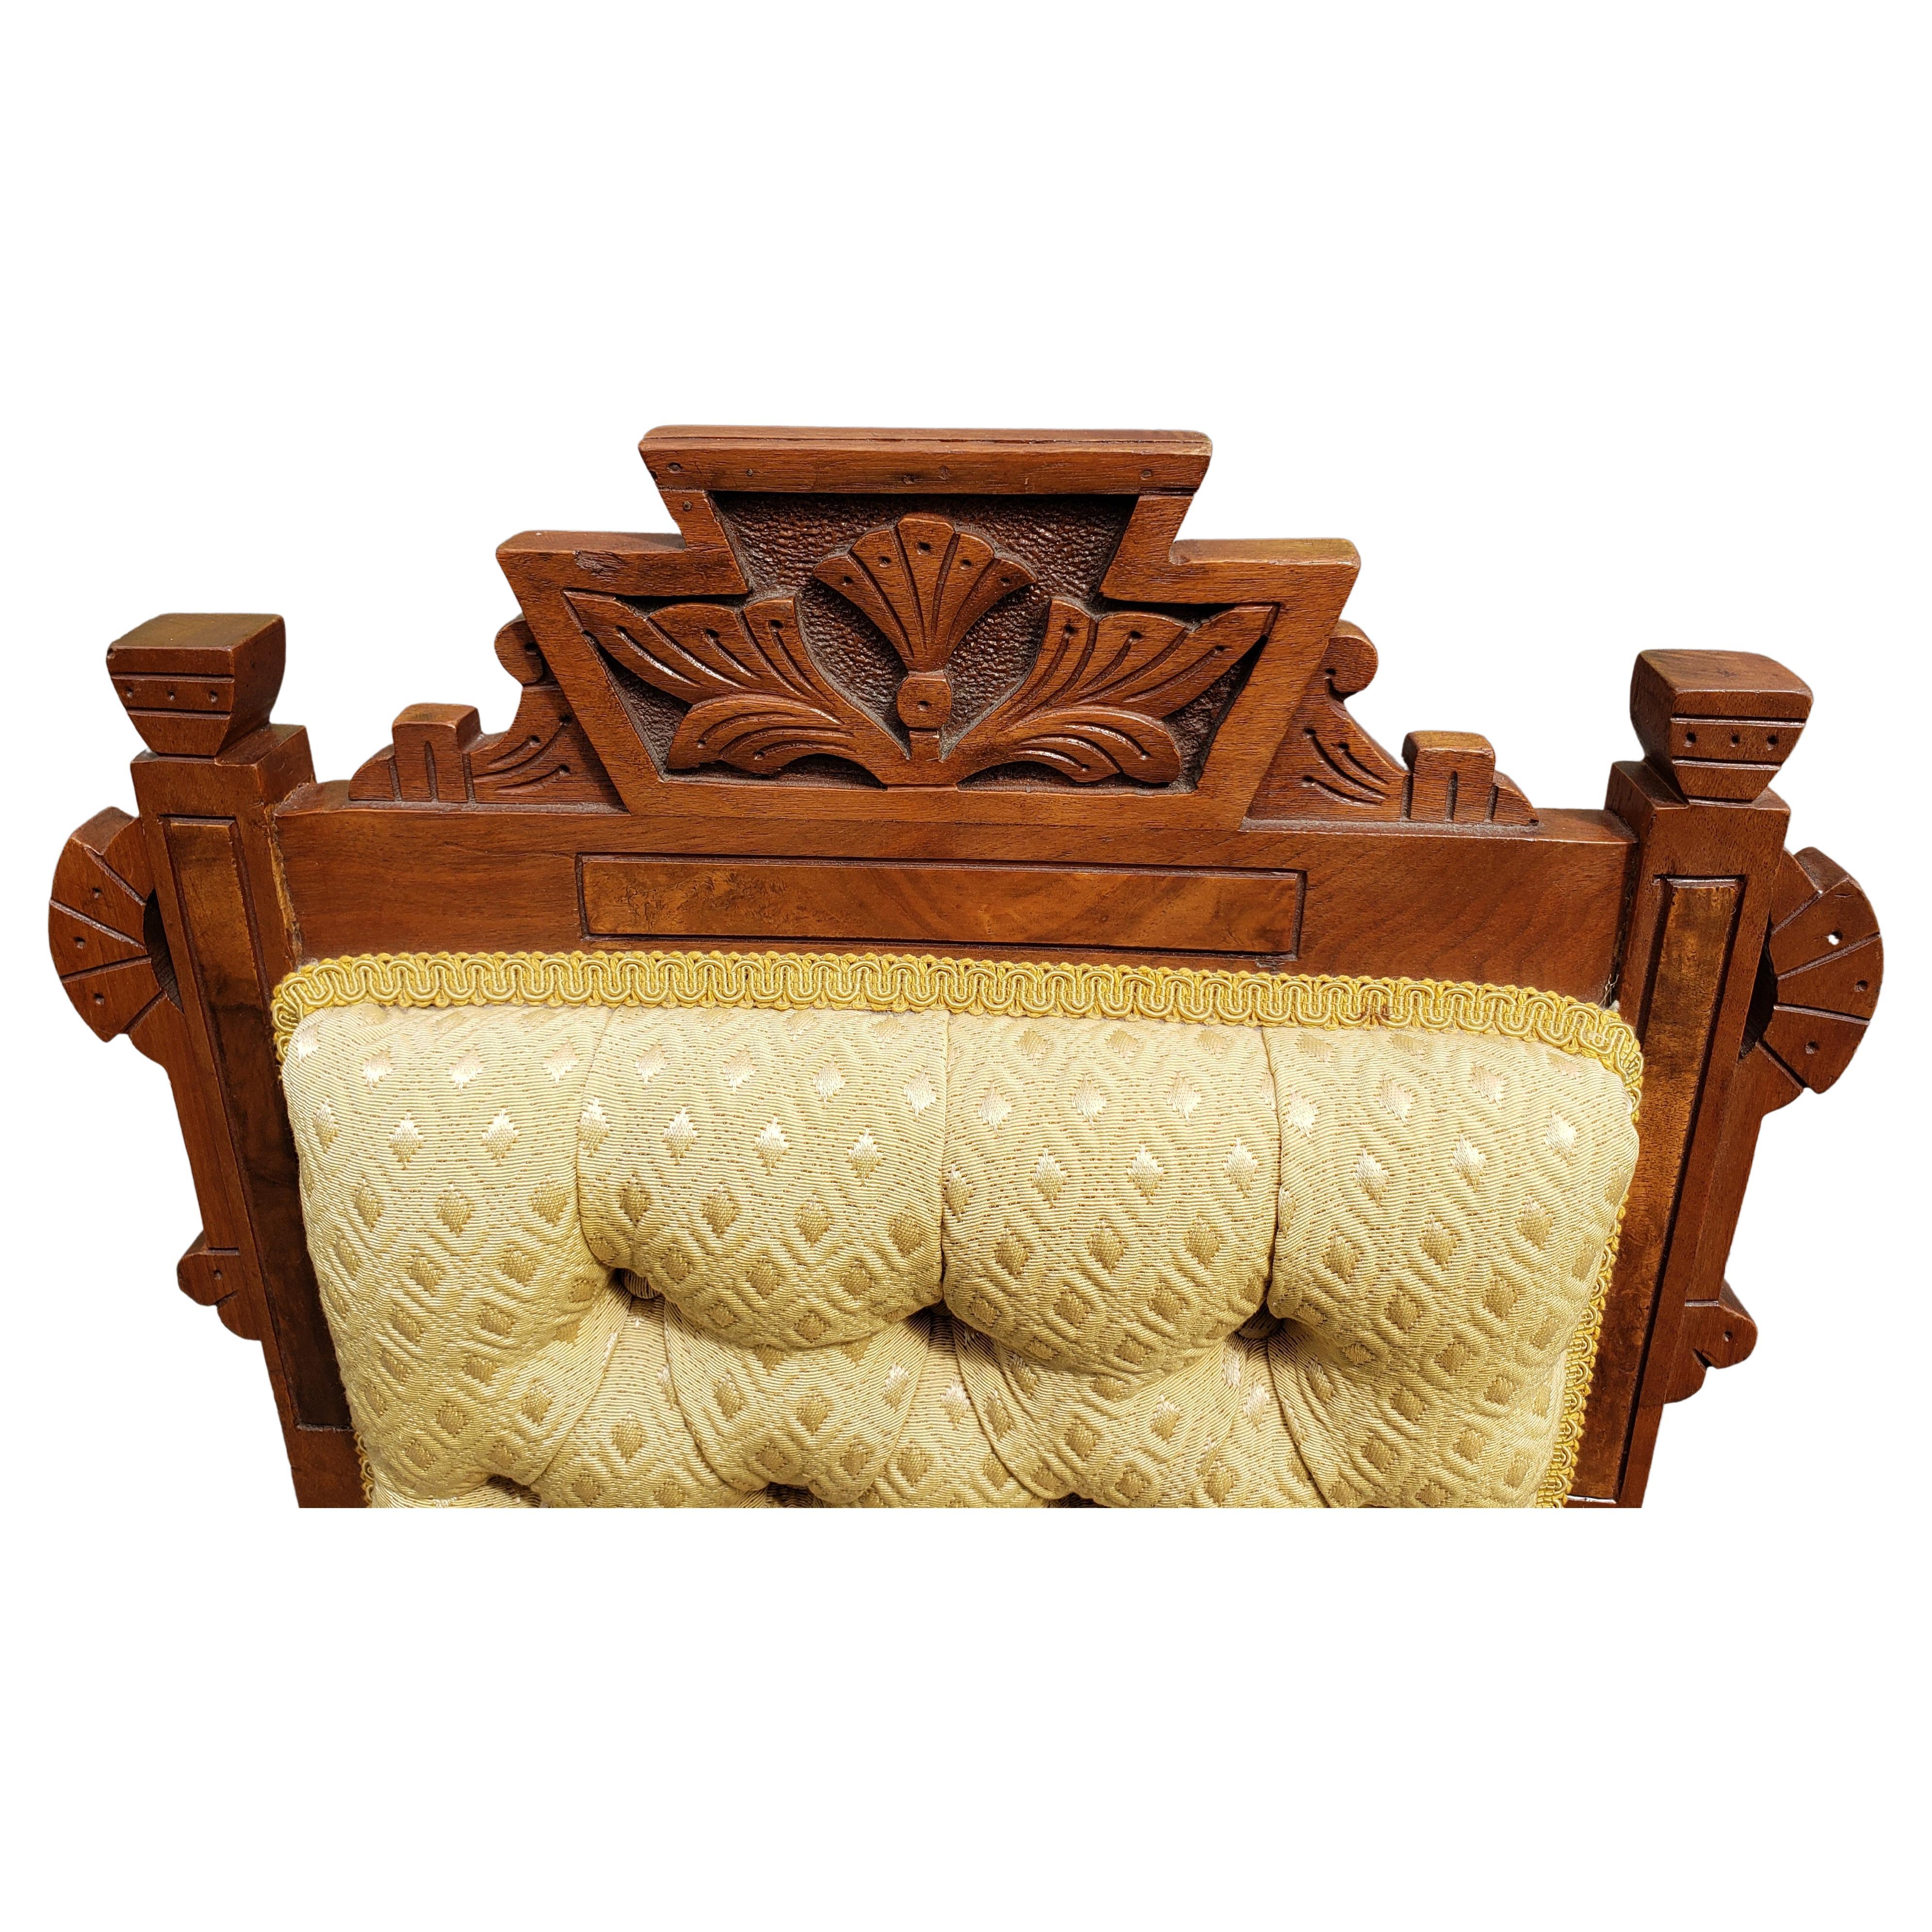 Antiker viktorianischer Parlor-Stuhl aus Nussbaumholz, um 1880.
Gepolsterte und getuftete Rückseite mit einem luxuriösen Stoff.
Vorderfüße Räder. Farbe: Hellgelb
Maße: 19 Zoll B x 22 Zoll T x 37,5 Zoll H. Sitzhöhe: 19 Zoll